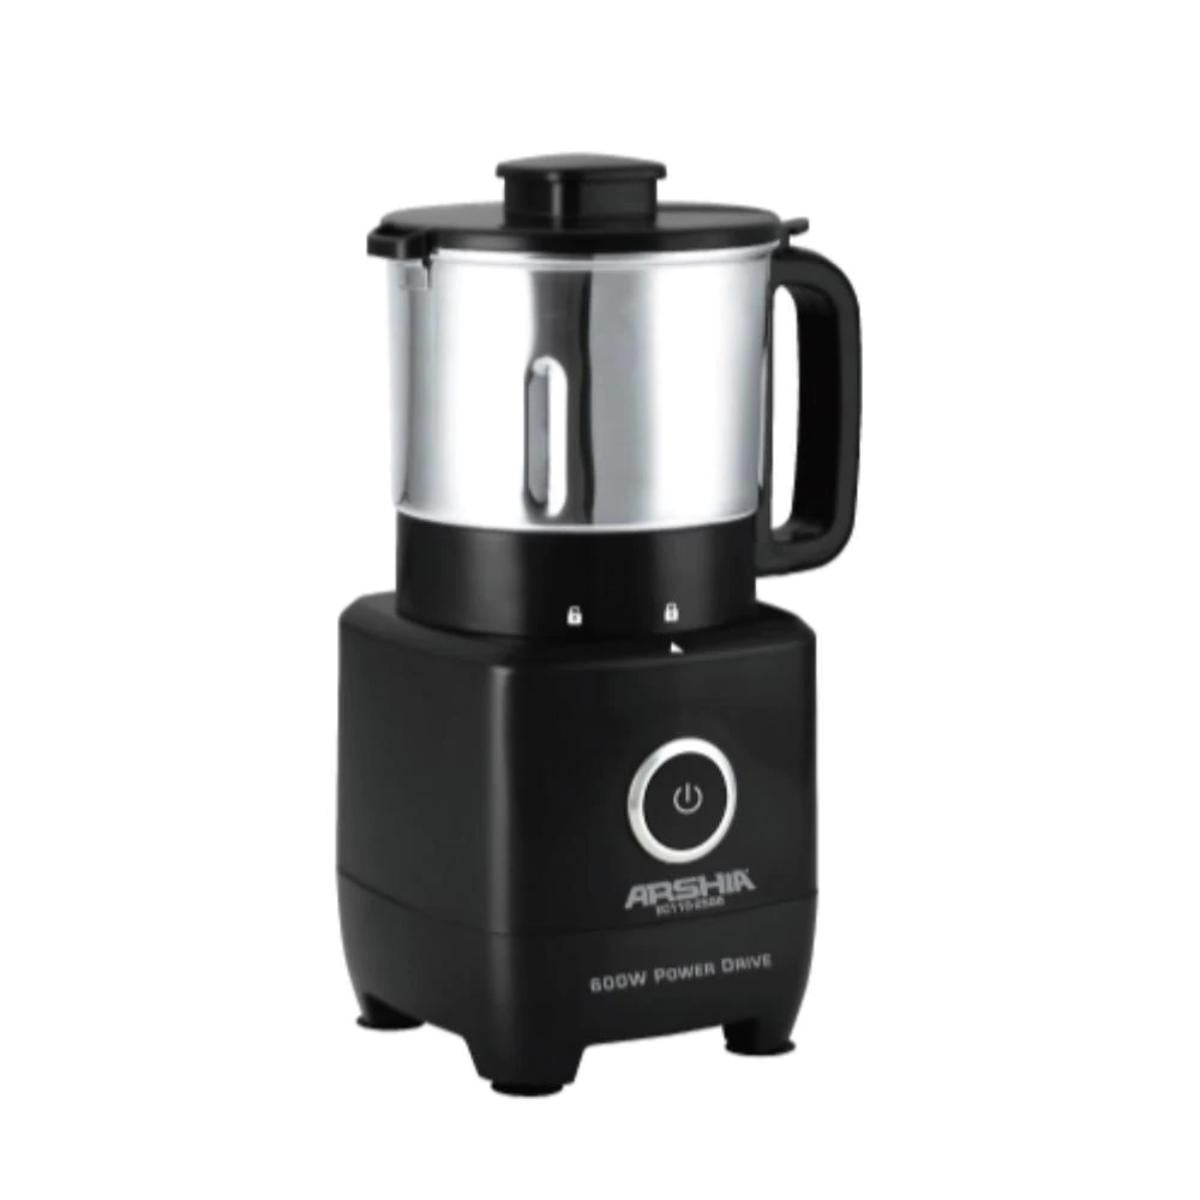 2556/Arshia coffee grinder (b) 600watt / 500ml / 4 stanless blades / safty lid look / black color 600 / 500ML / Coffee grinder